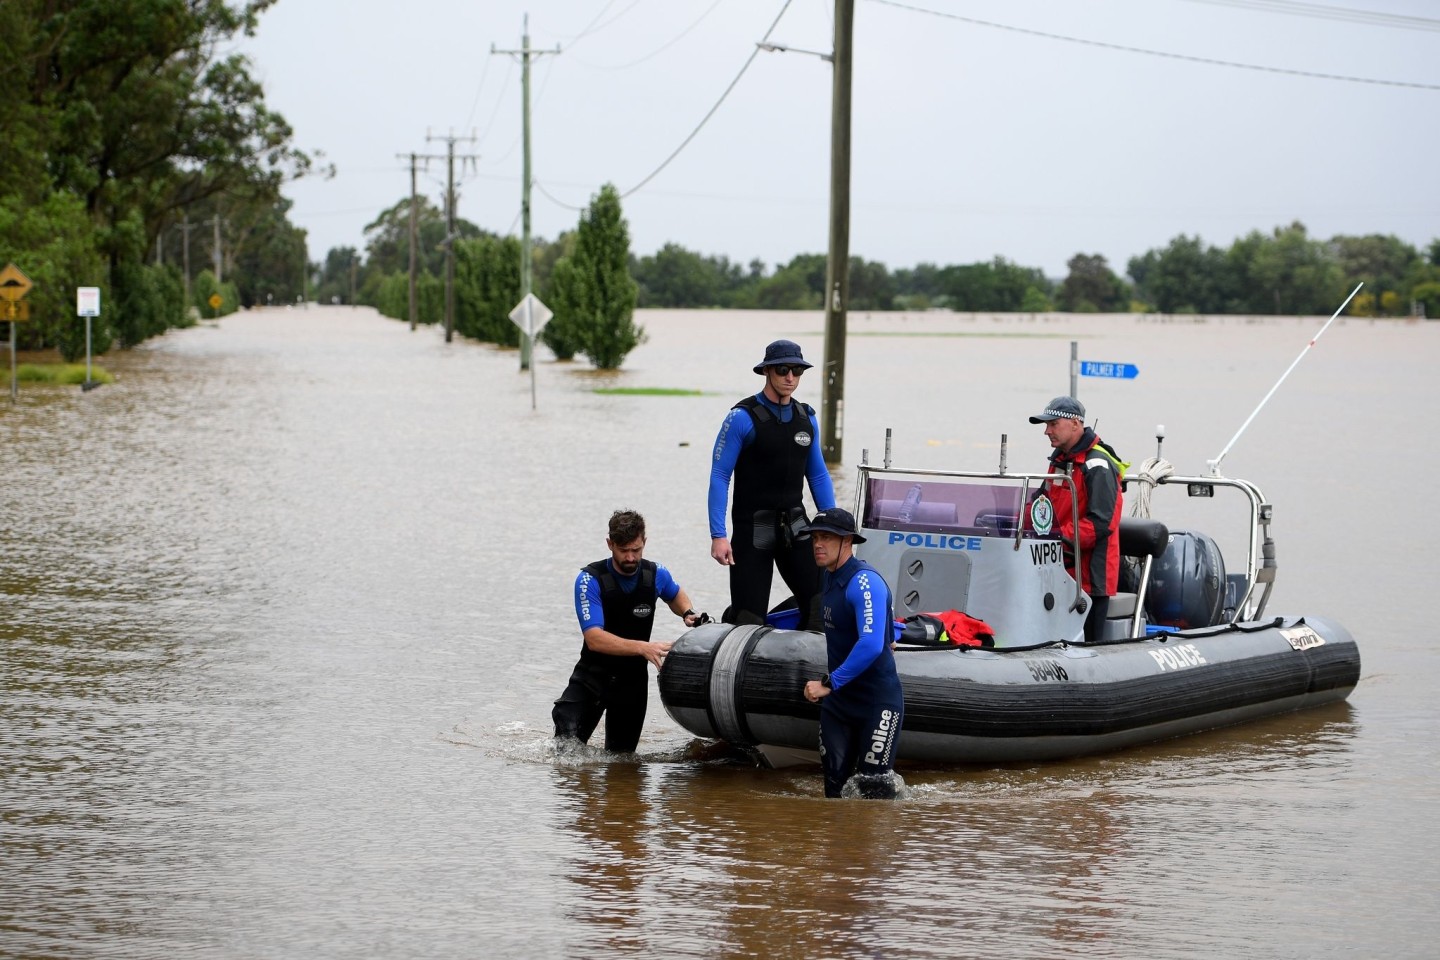 Polizisten In Australien patrouillieren im Hochwasser.